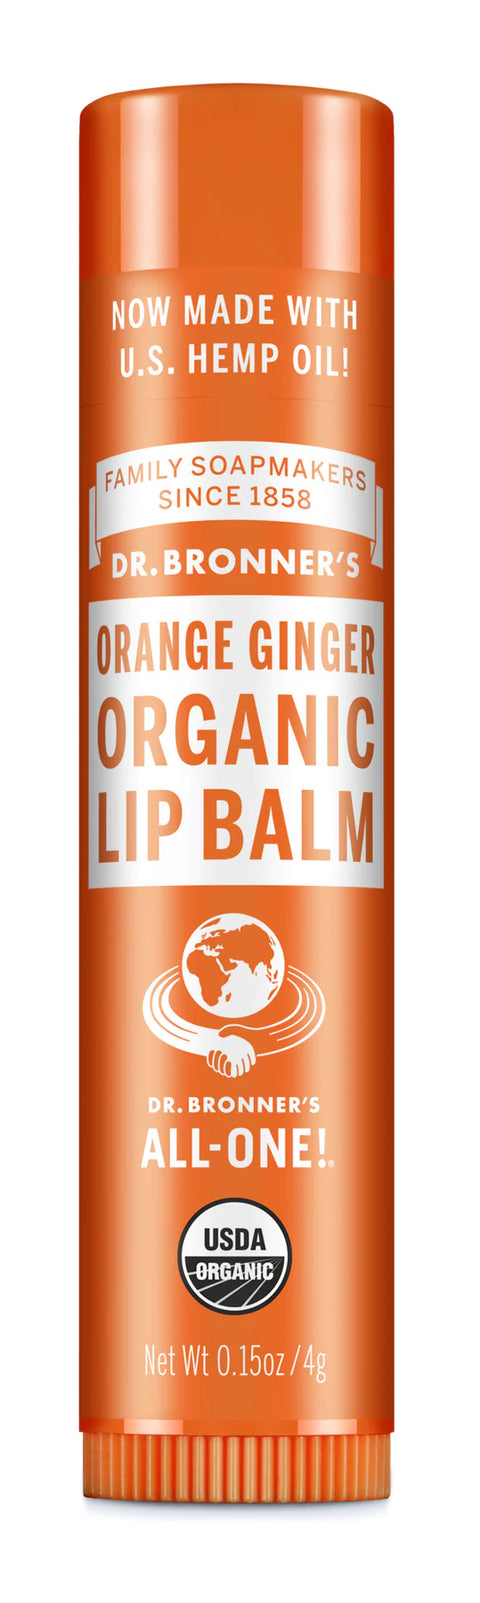 Dr. Bronner's Organic Lip Balm, Orange Ginger